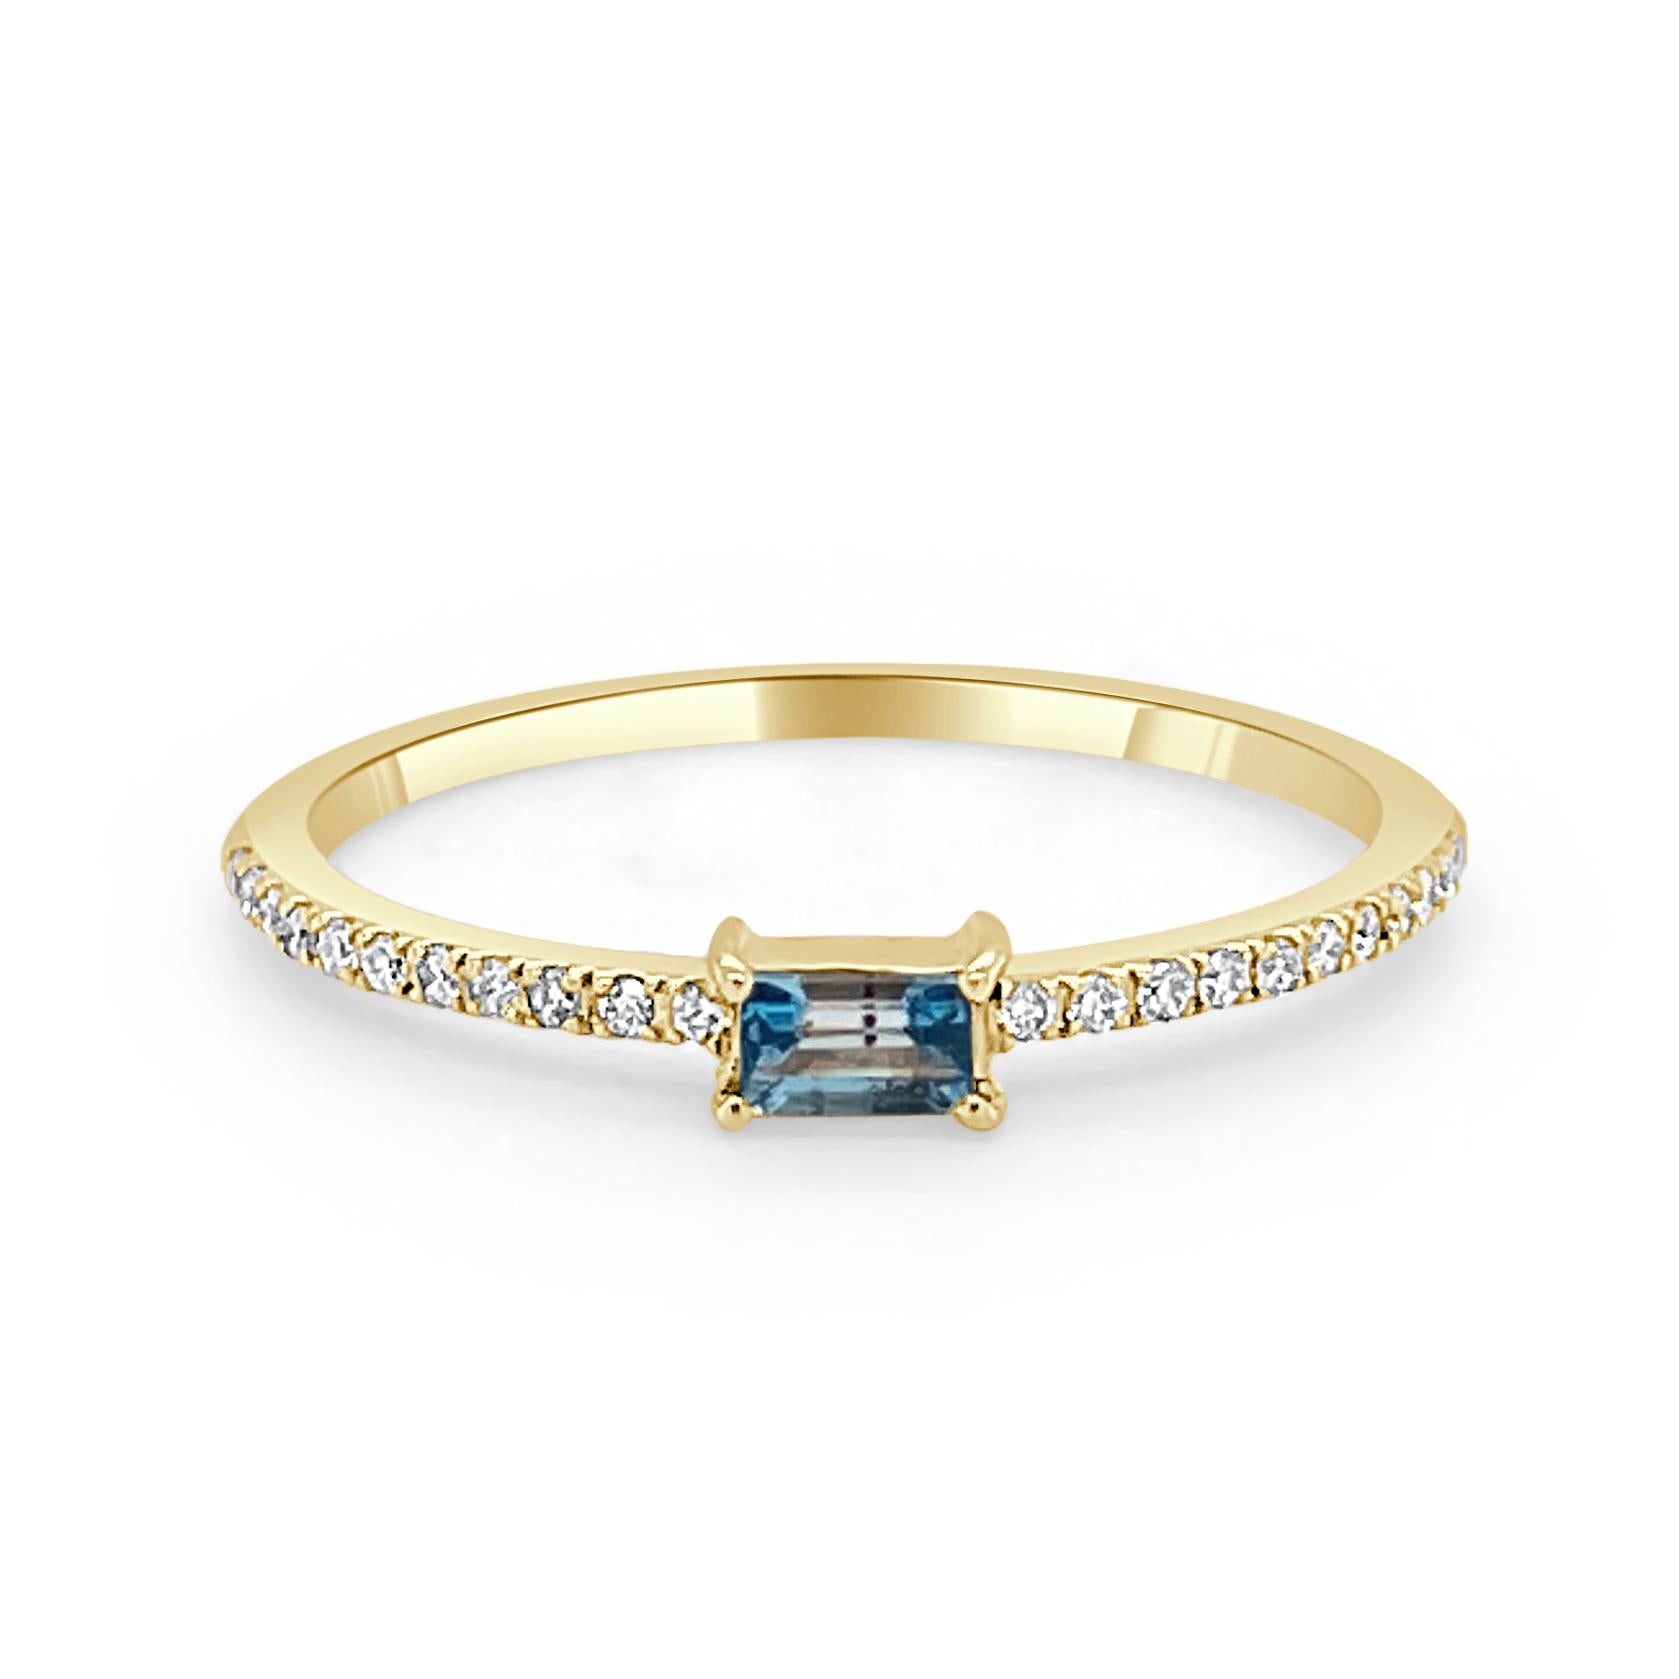 Charmantes und schwer fassbares Design - Dieser stapelbare Ring besteht aus einem 14-karätigen Goldband, einem wunderschönen blauen Topas in Baguetteform (ca. 0,16 ct) und runden Diamanten (ca. 0,09 ct). 
Maße für die Ringgröße: Die Fingergröße des